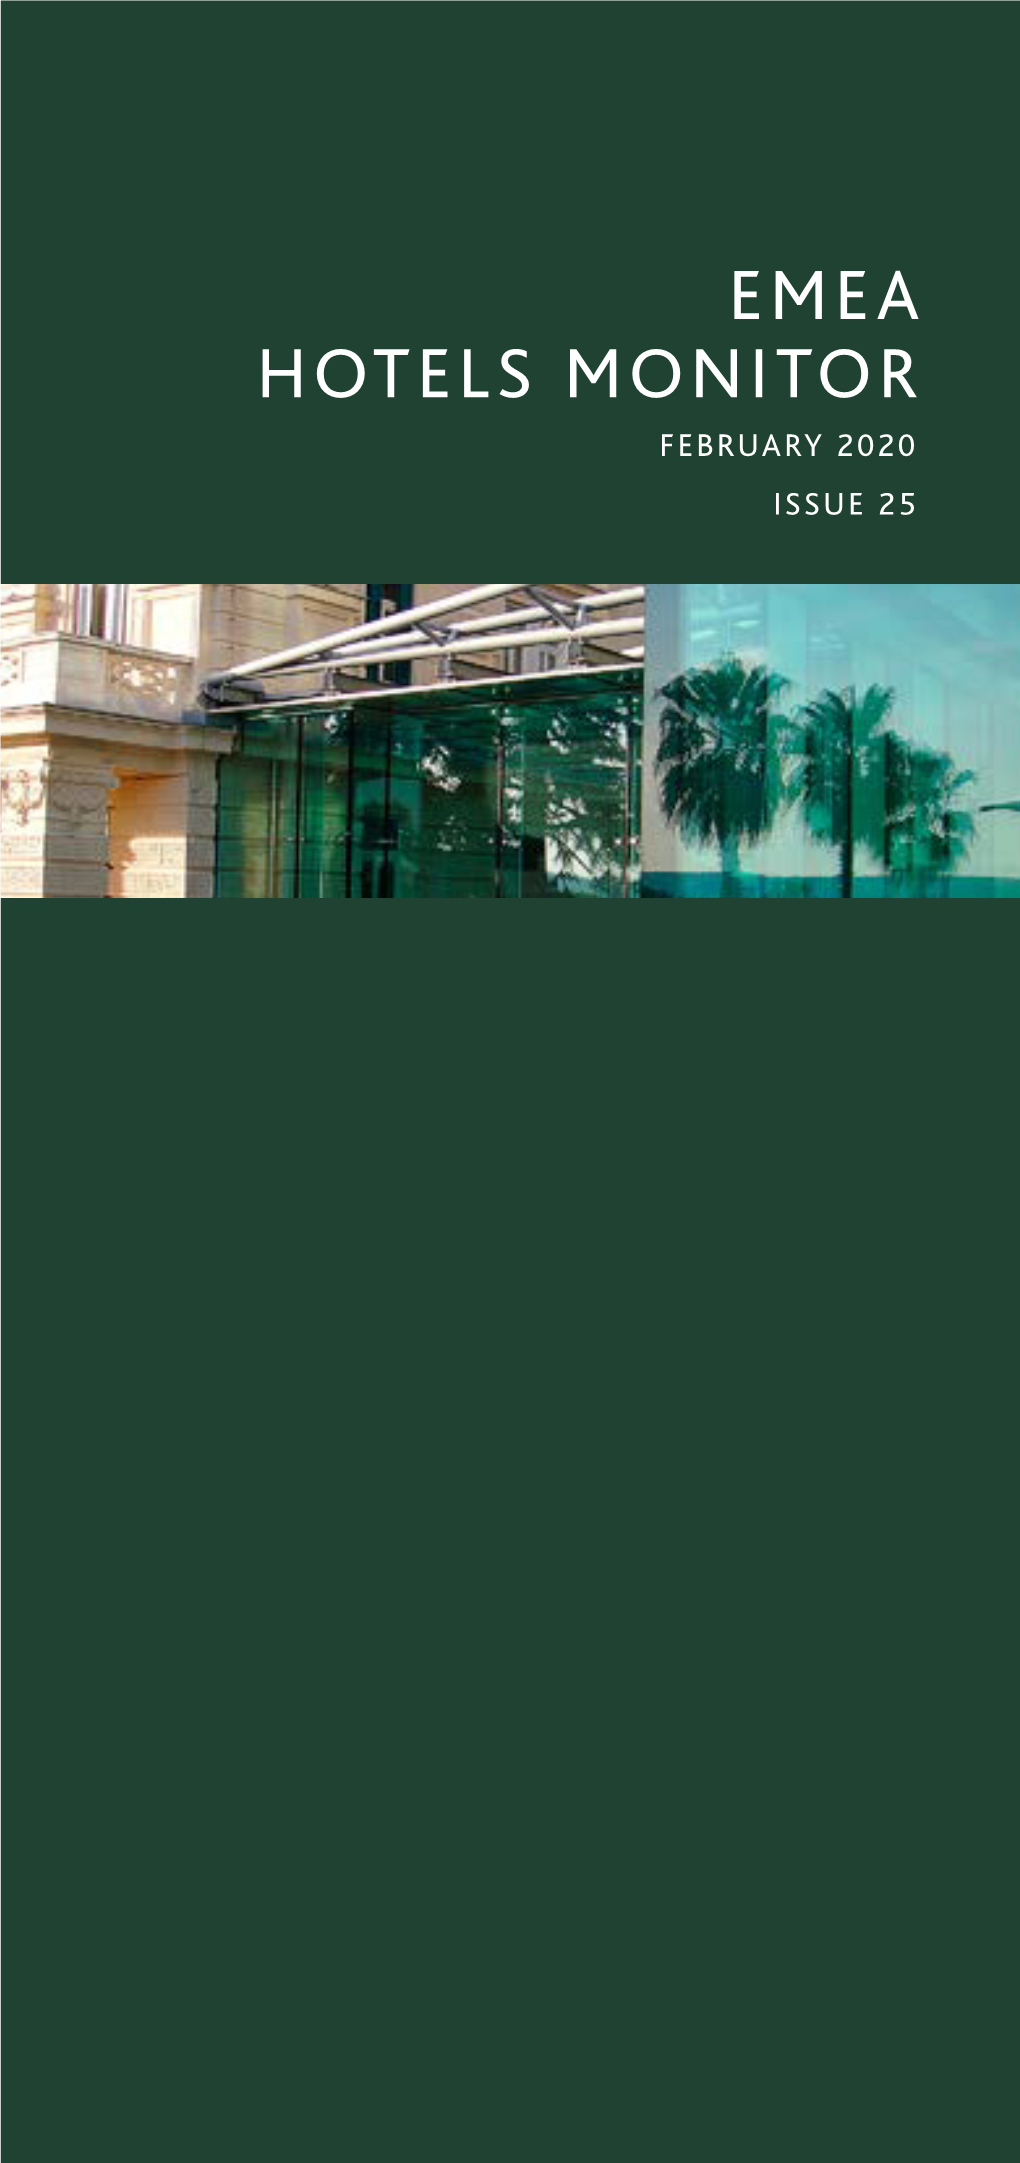 White Bridge, EMEA Hotels Monitor, Issue 25 (February 2020)